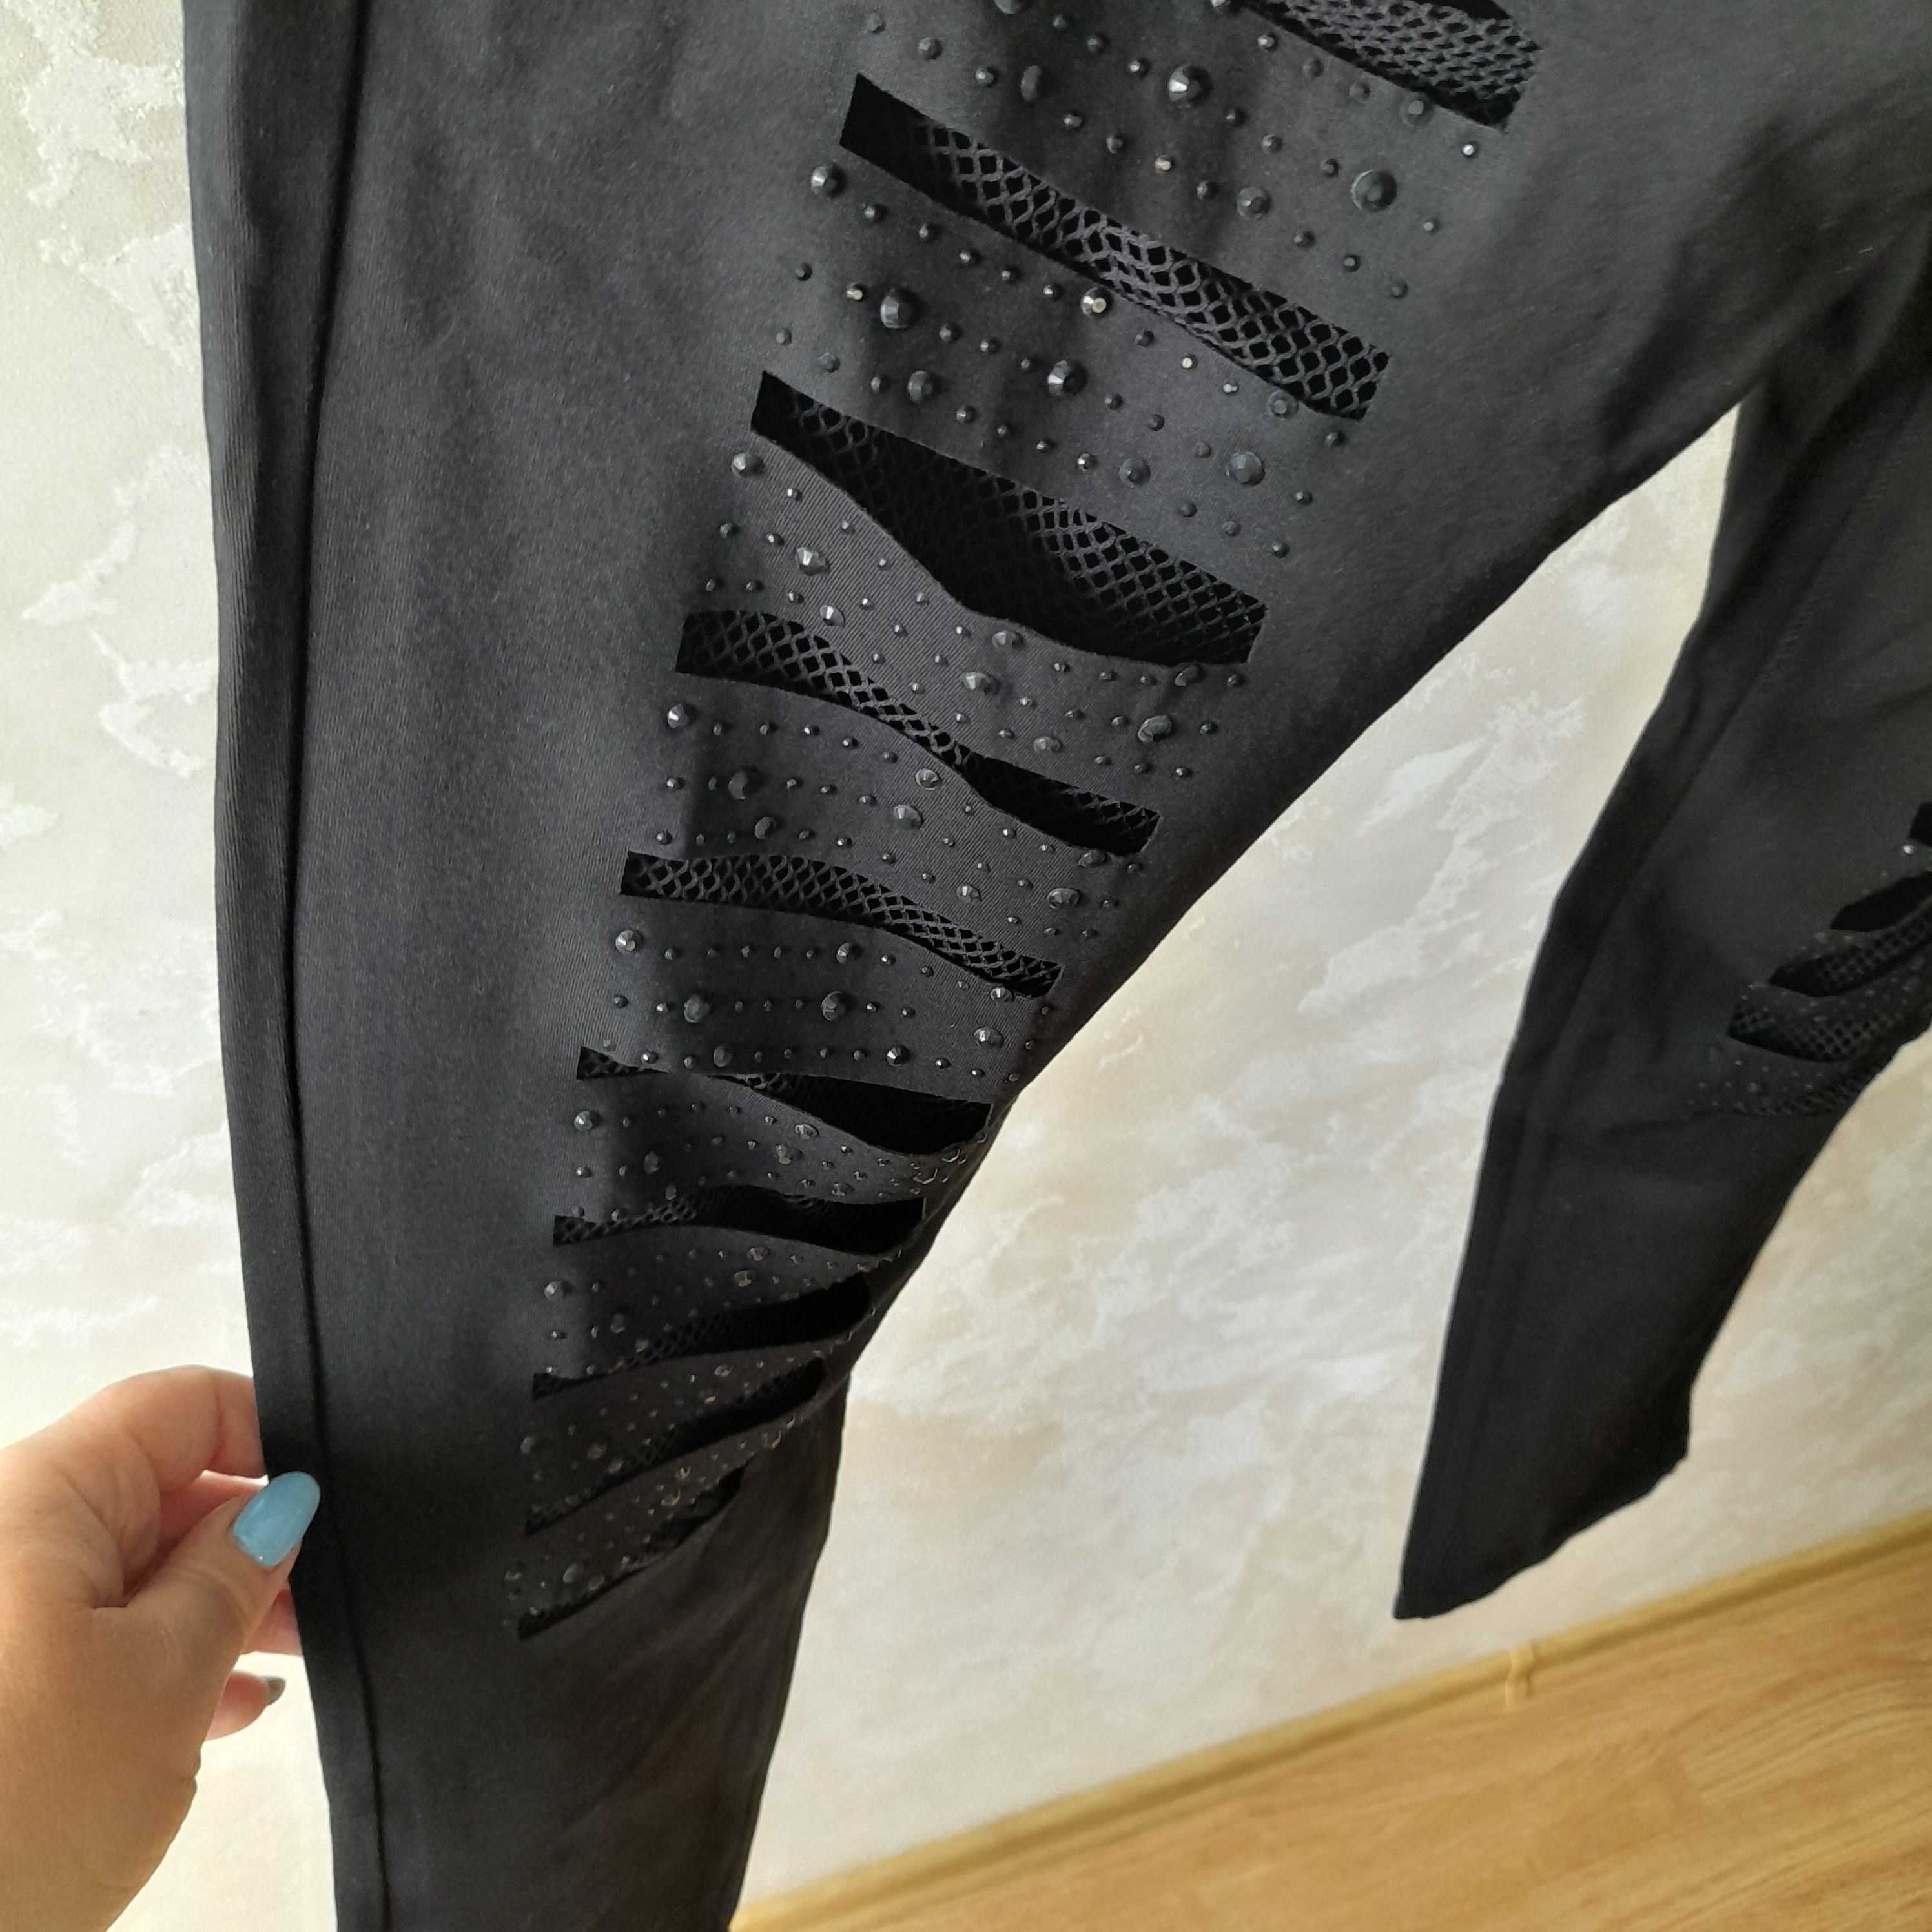 NOWE! Spodnie damskie, czarne r. 34 L z siatką dżety jeansy miekkie Toruń •  OLX.pl